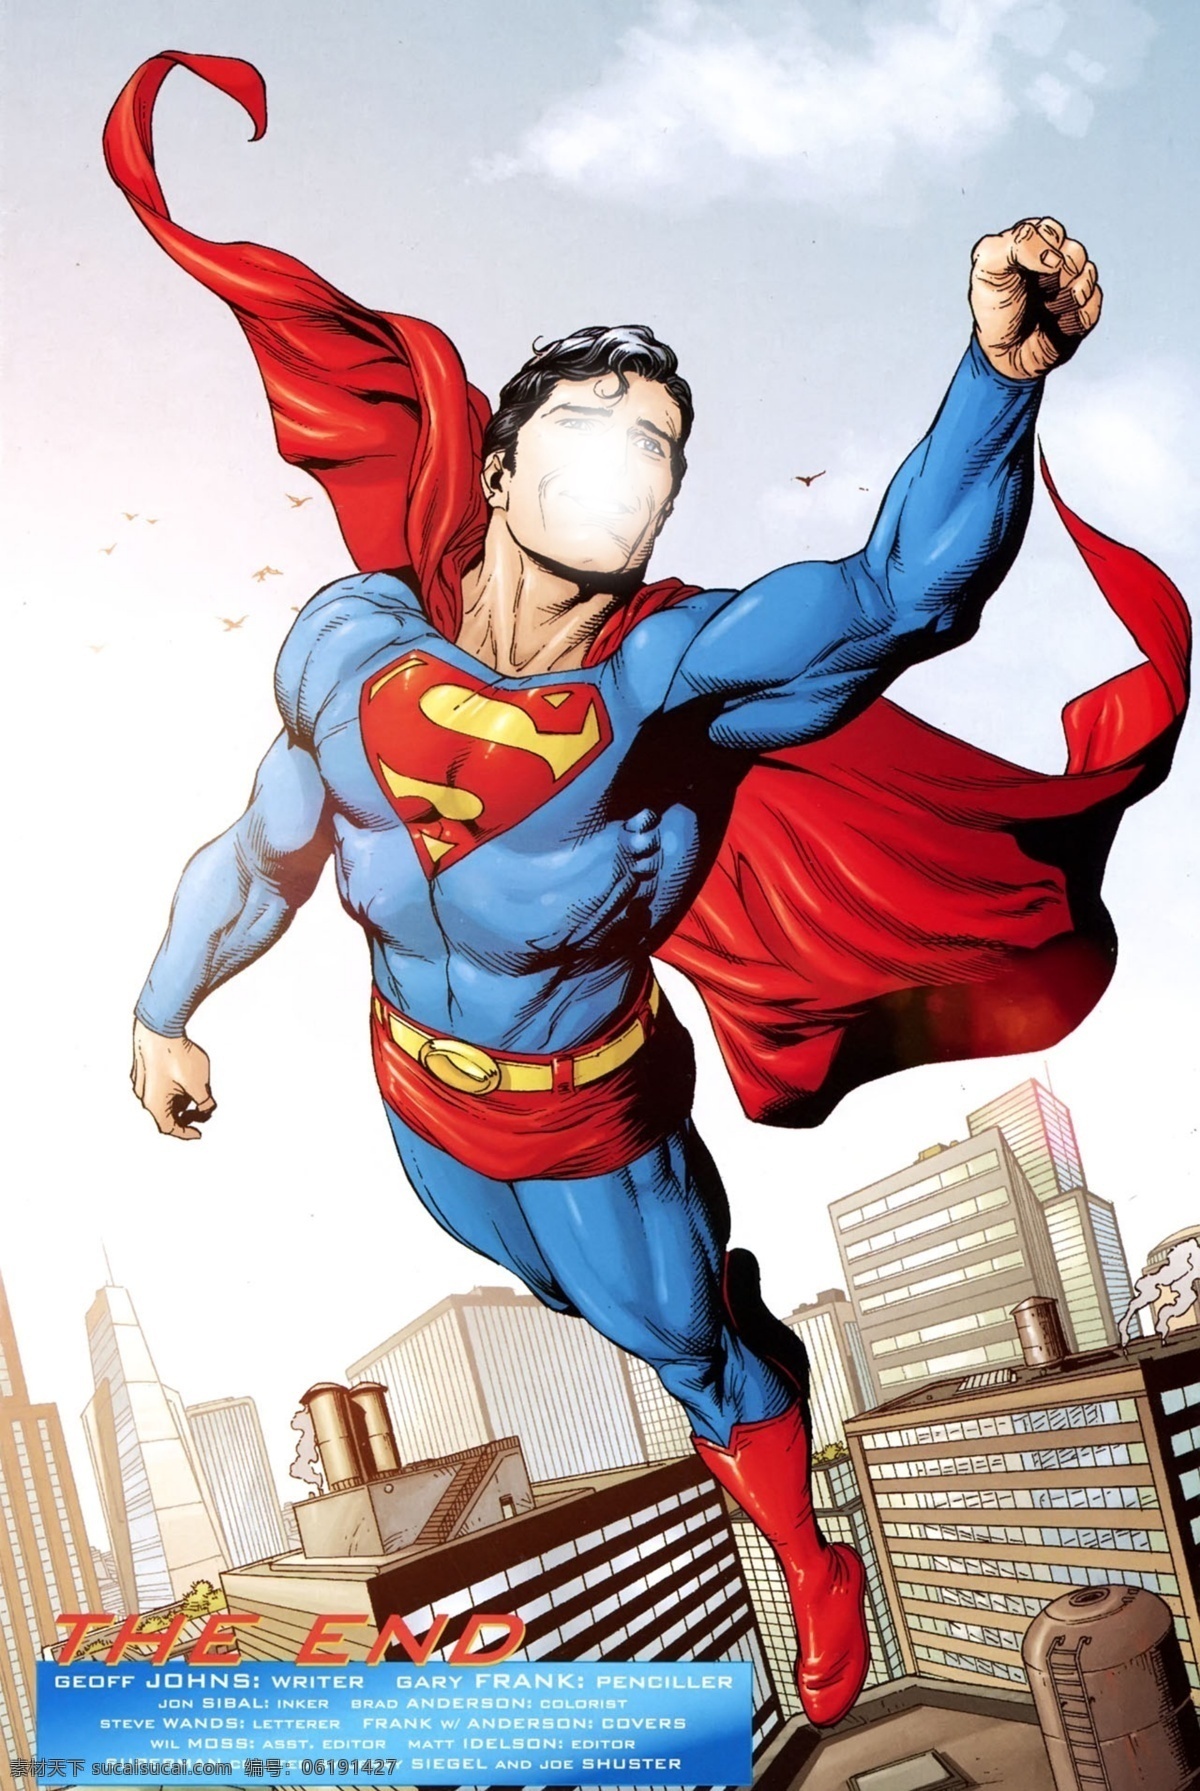 超人 飞跃 红披肩 超能 男人 动漫动画 动漫人物